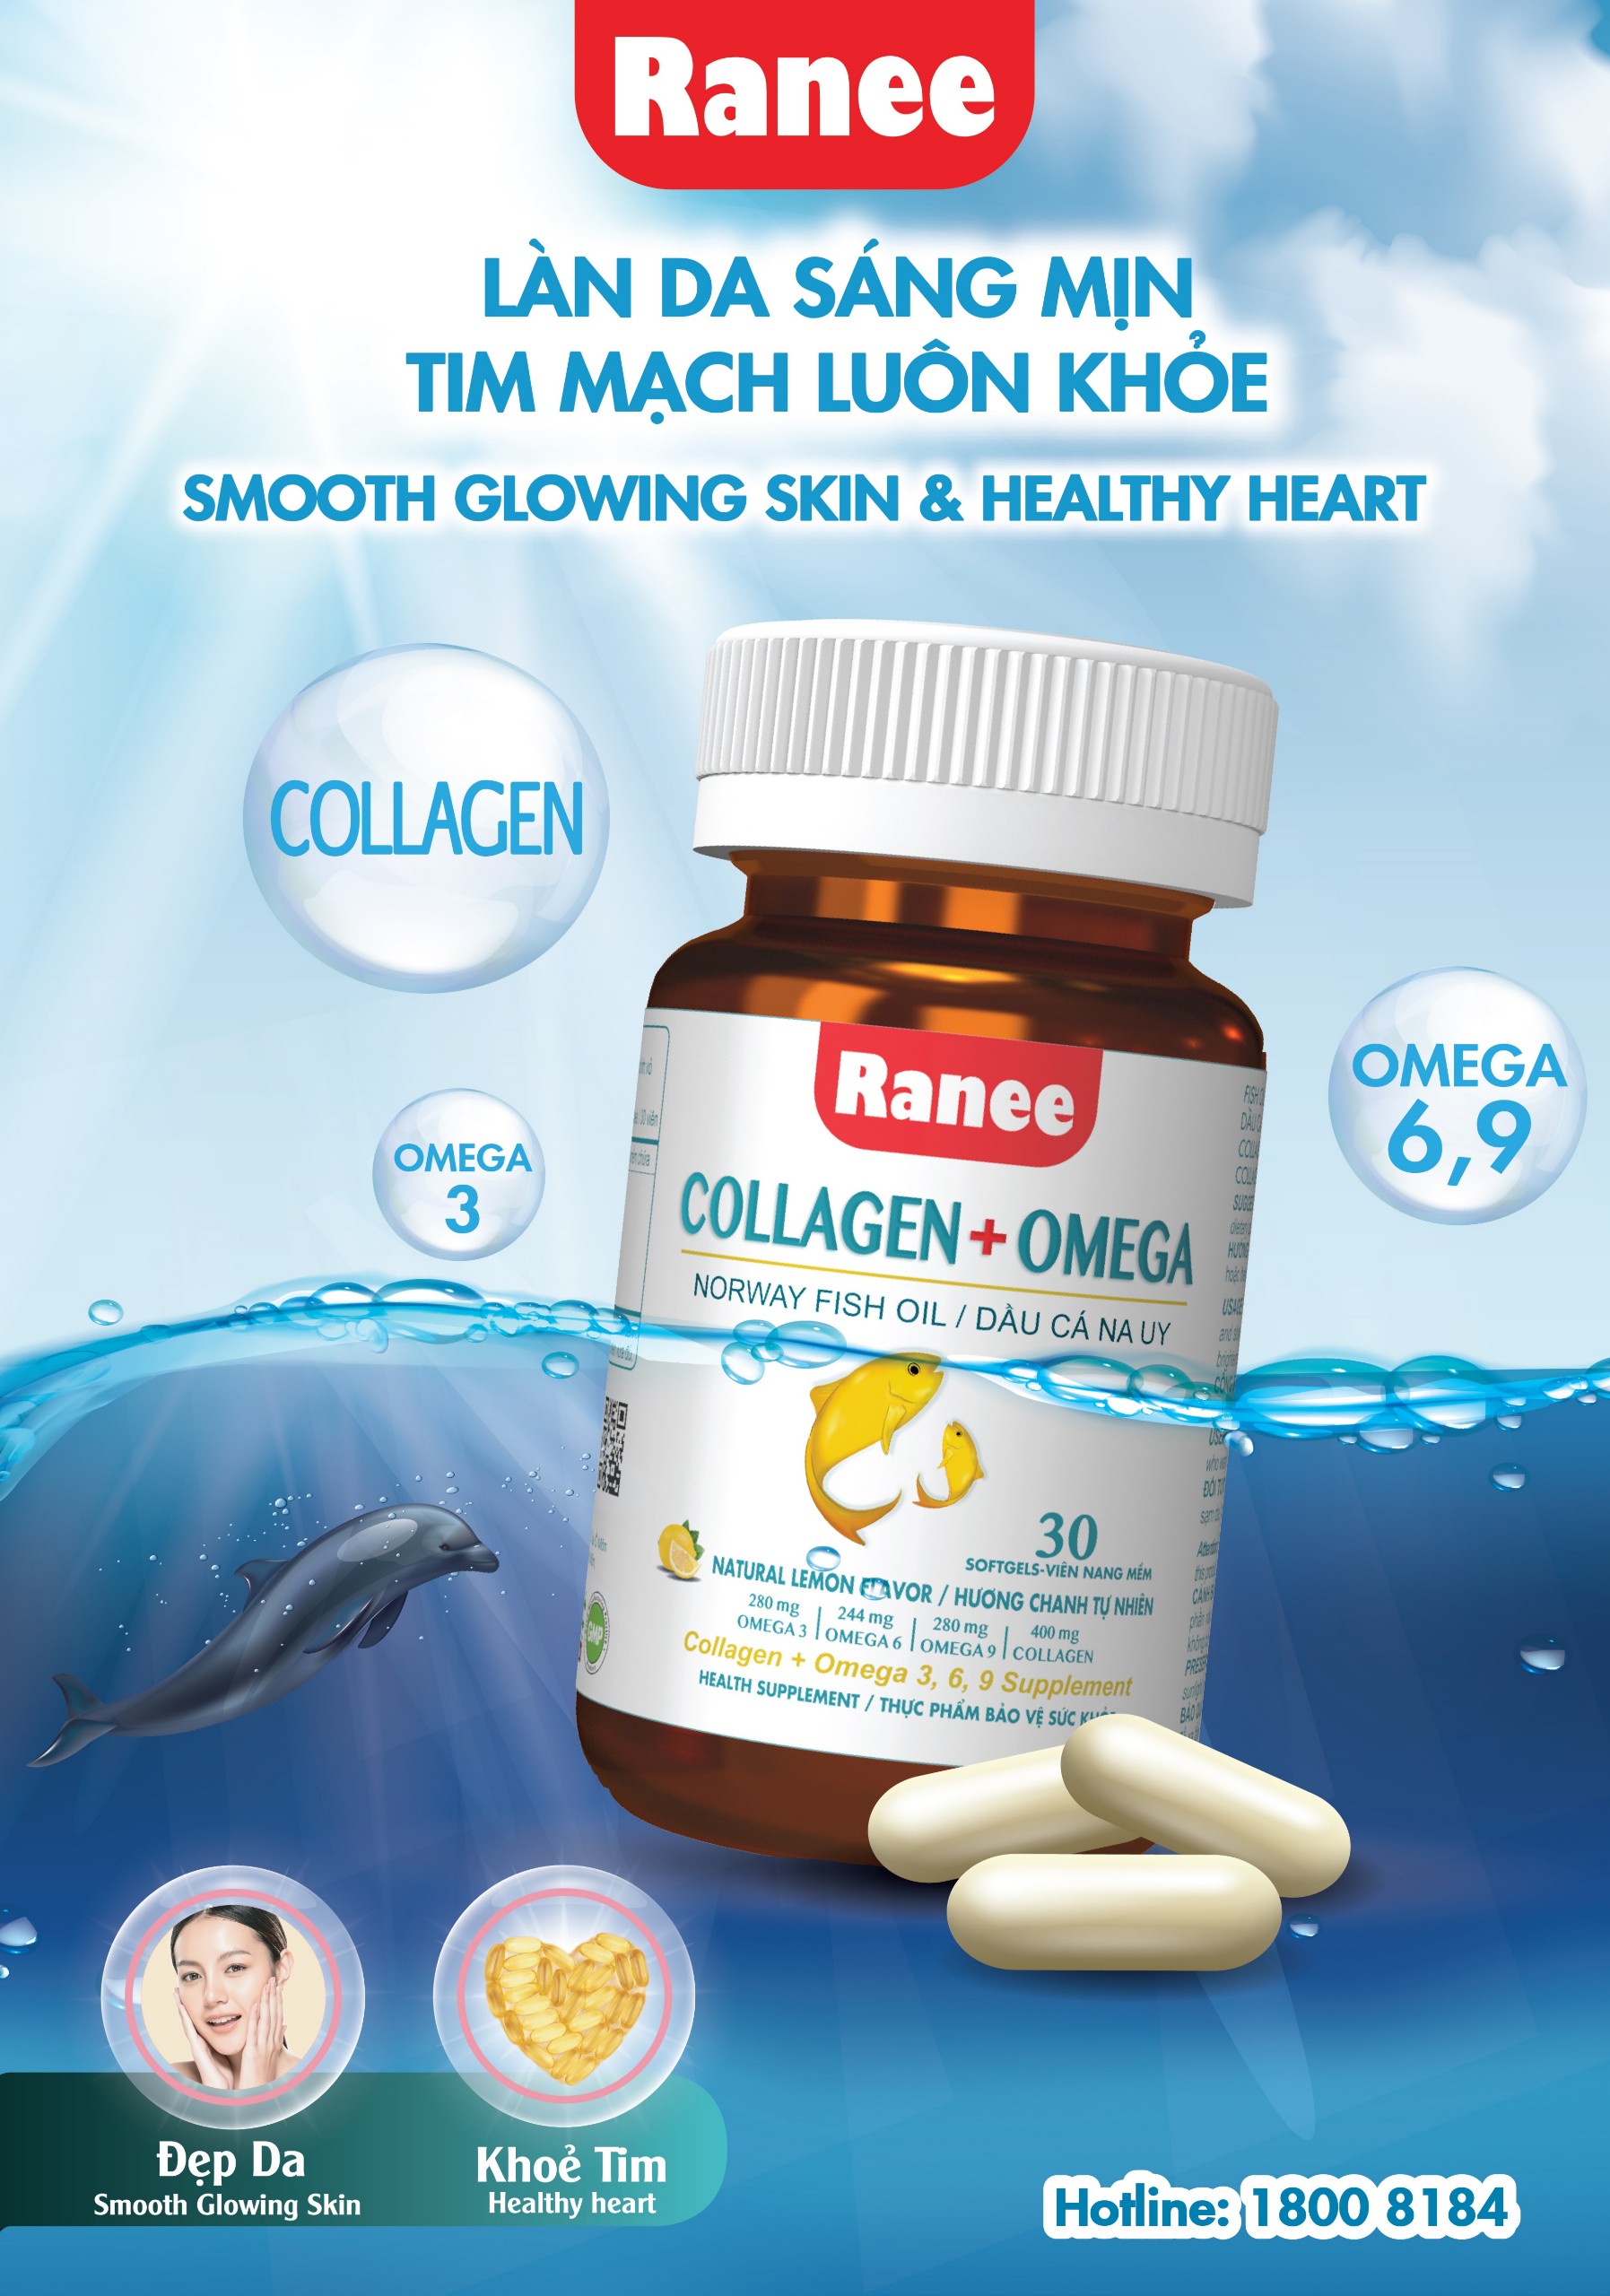 Thực Phẩm Chức Năng Ranee Collagen + Omega ( Hộp 30 viên ) Đẹp da, ngăn ngừa lão hóa